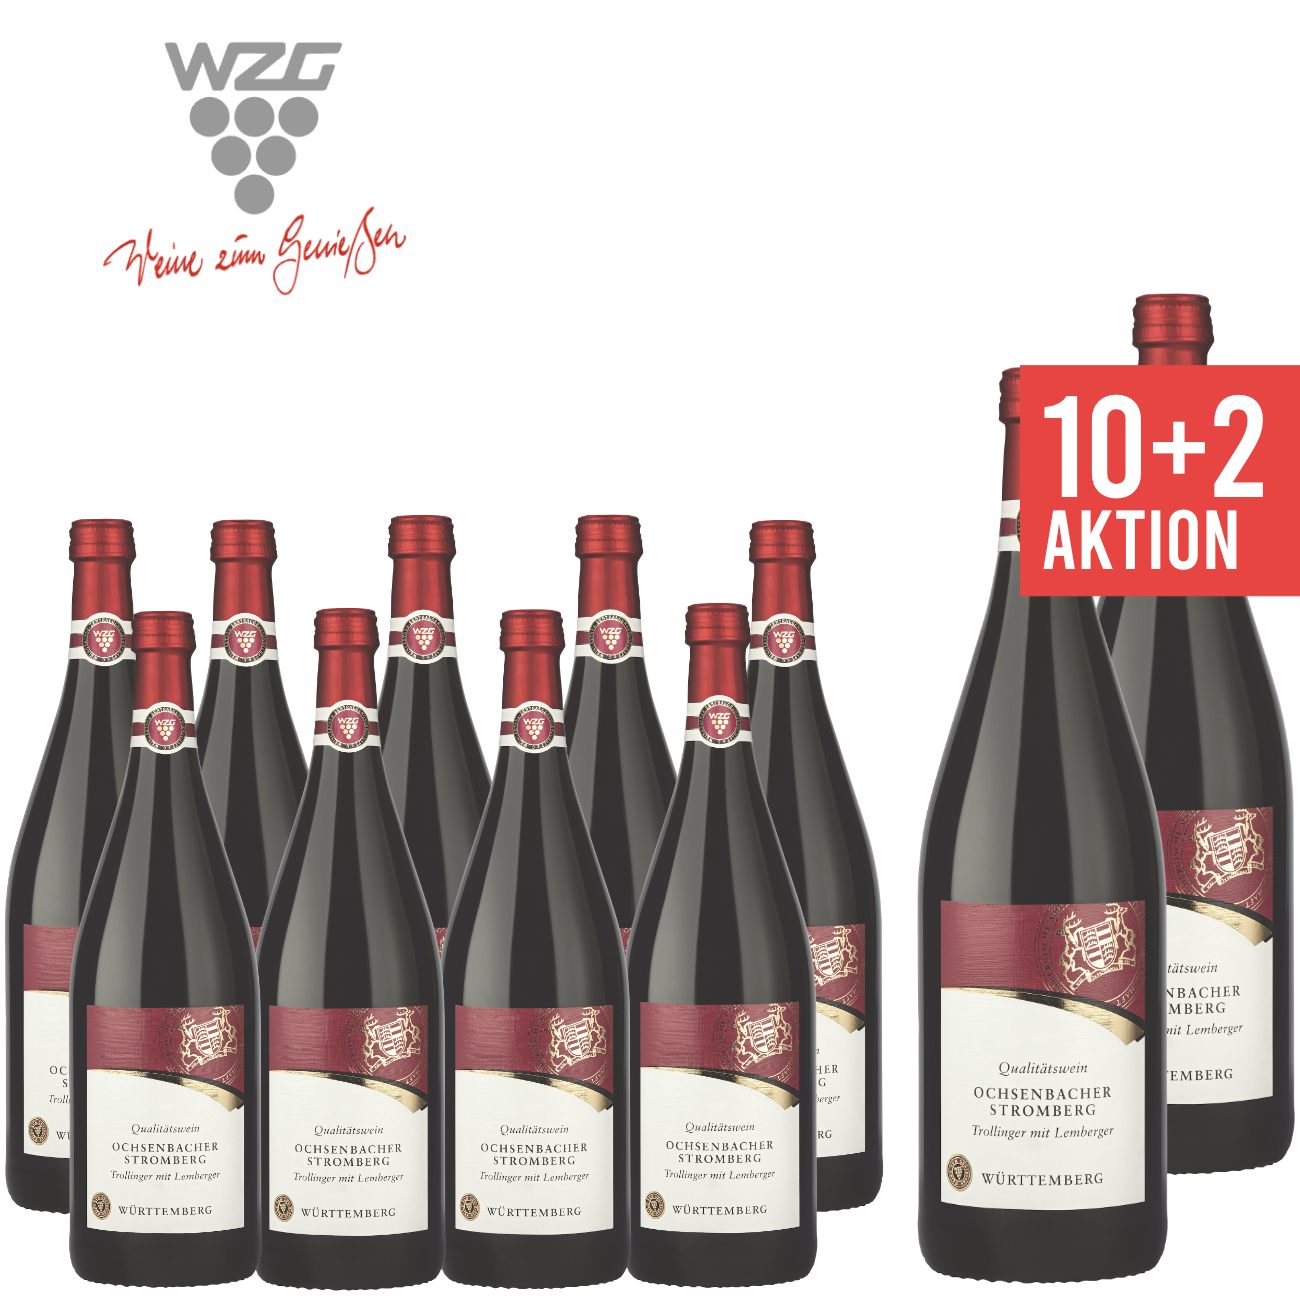 WZG Möglingen 10+2 Ochsenbacher Stromberg Trollinger mit Lemberger halbtrocken 1,0 L - Qualitätswein, Rotwein, Württemberg, Literflasche, 1-Liter